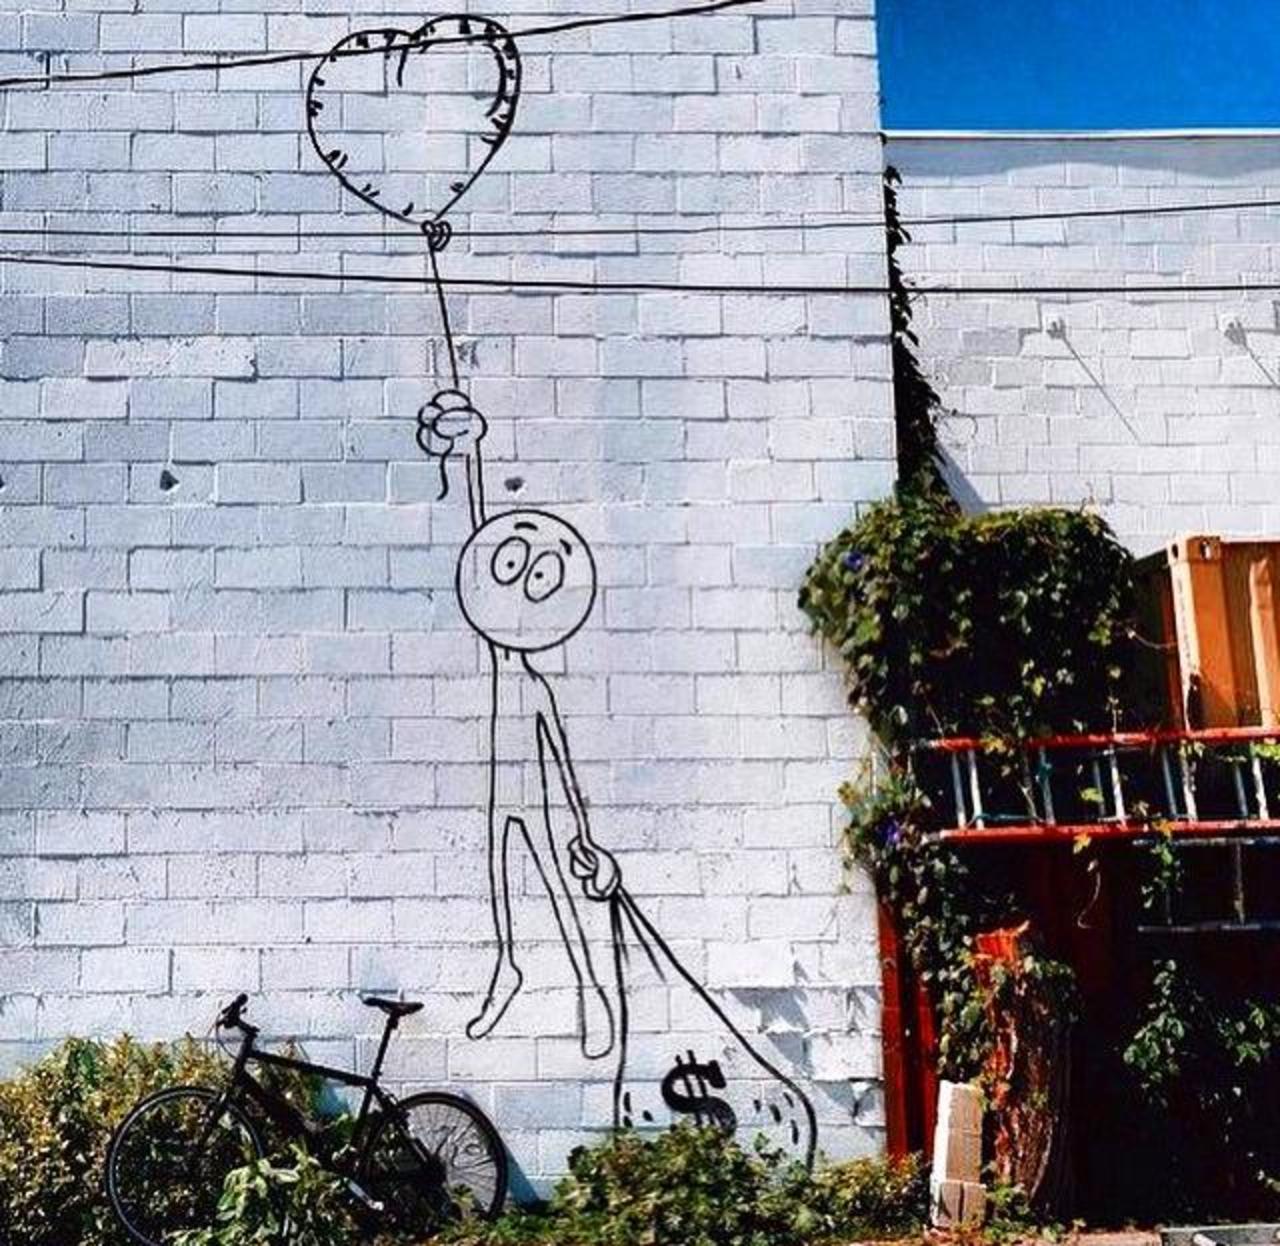 Love or money?
Street Art by Kaia Spire in LA 

#art #arte #graffiti #streetart http://t.co/LW3st6jSo4 yo